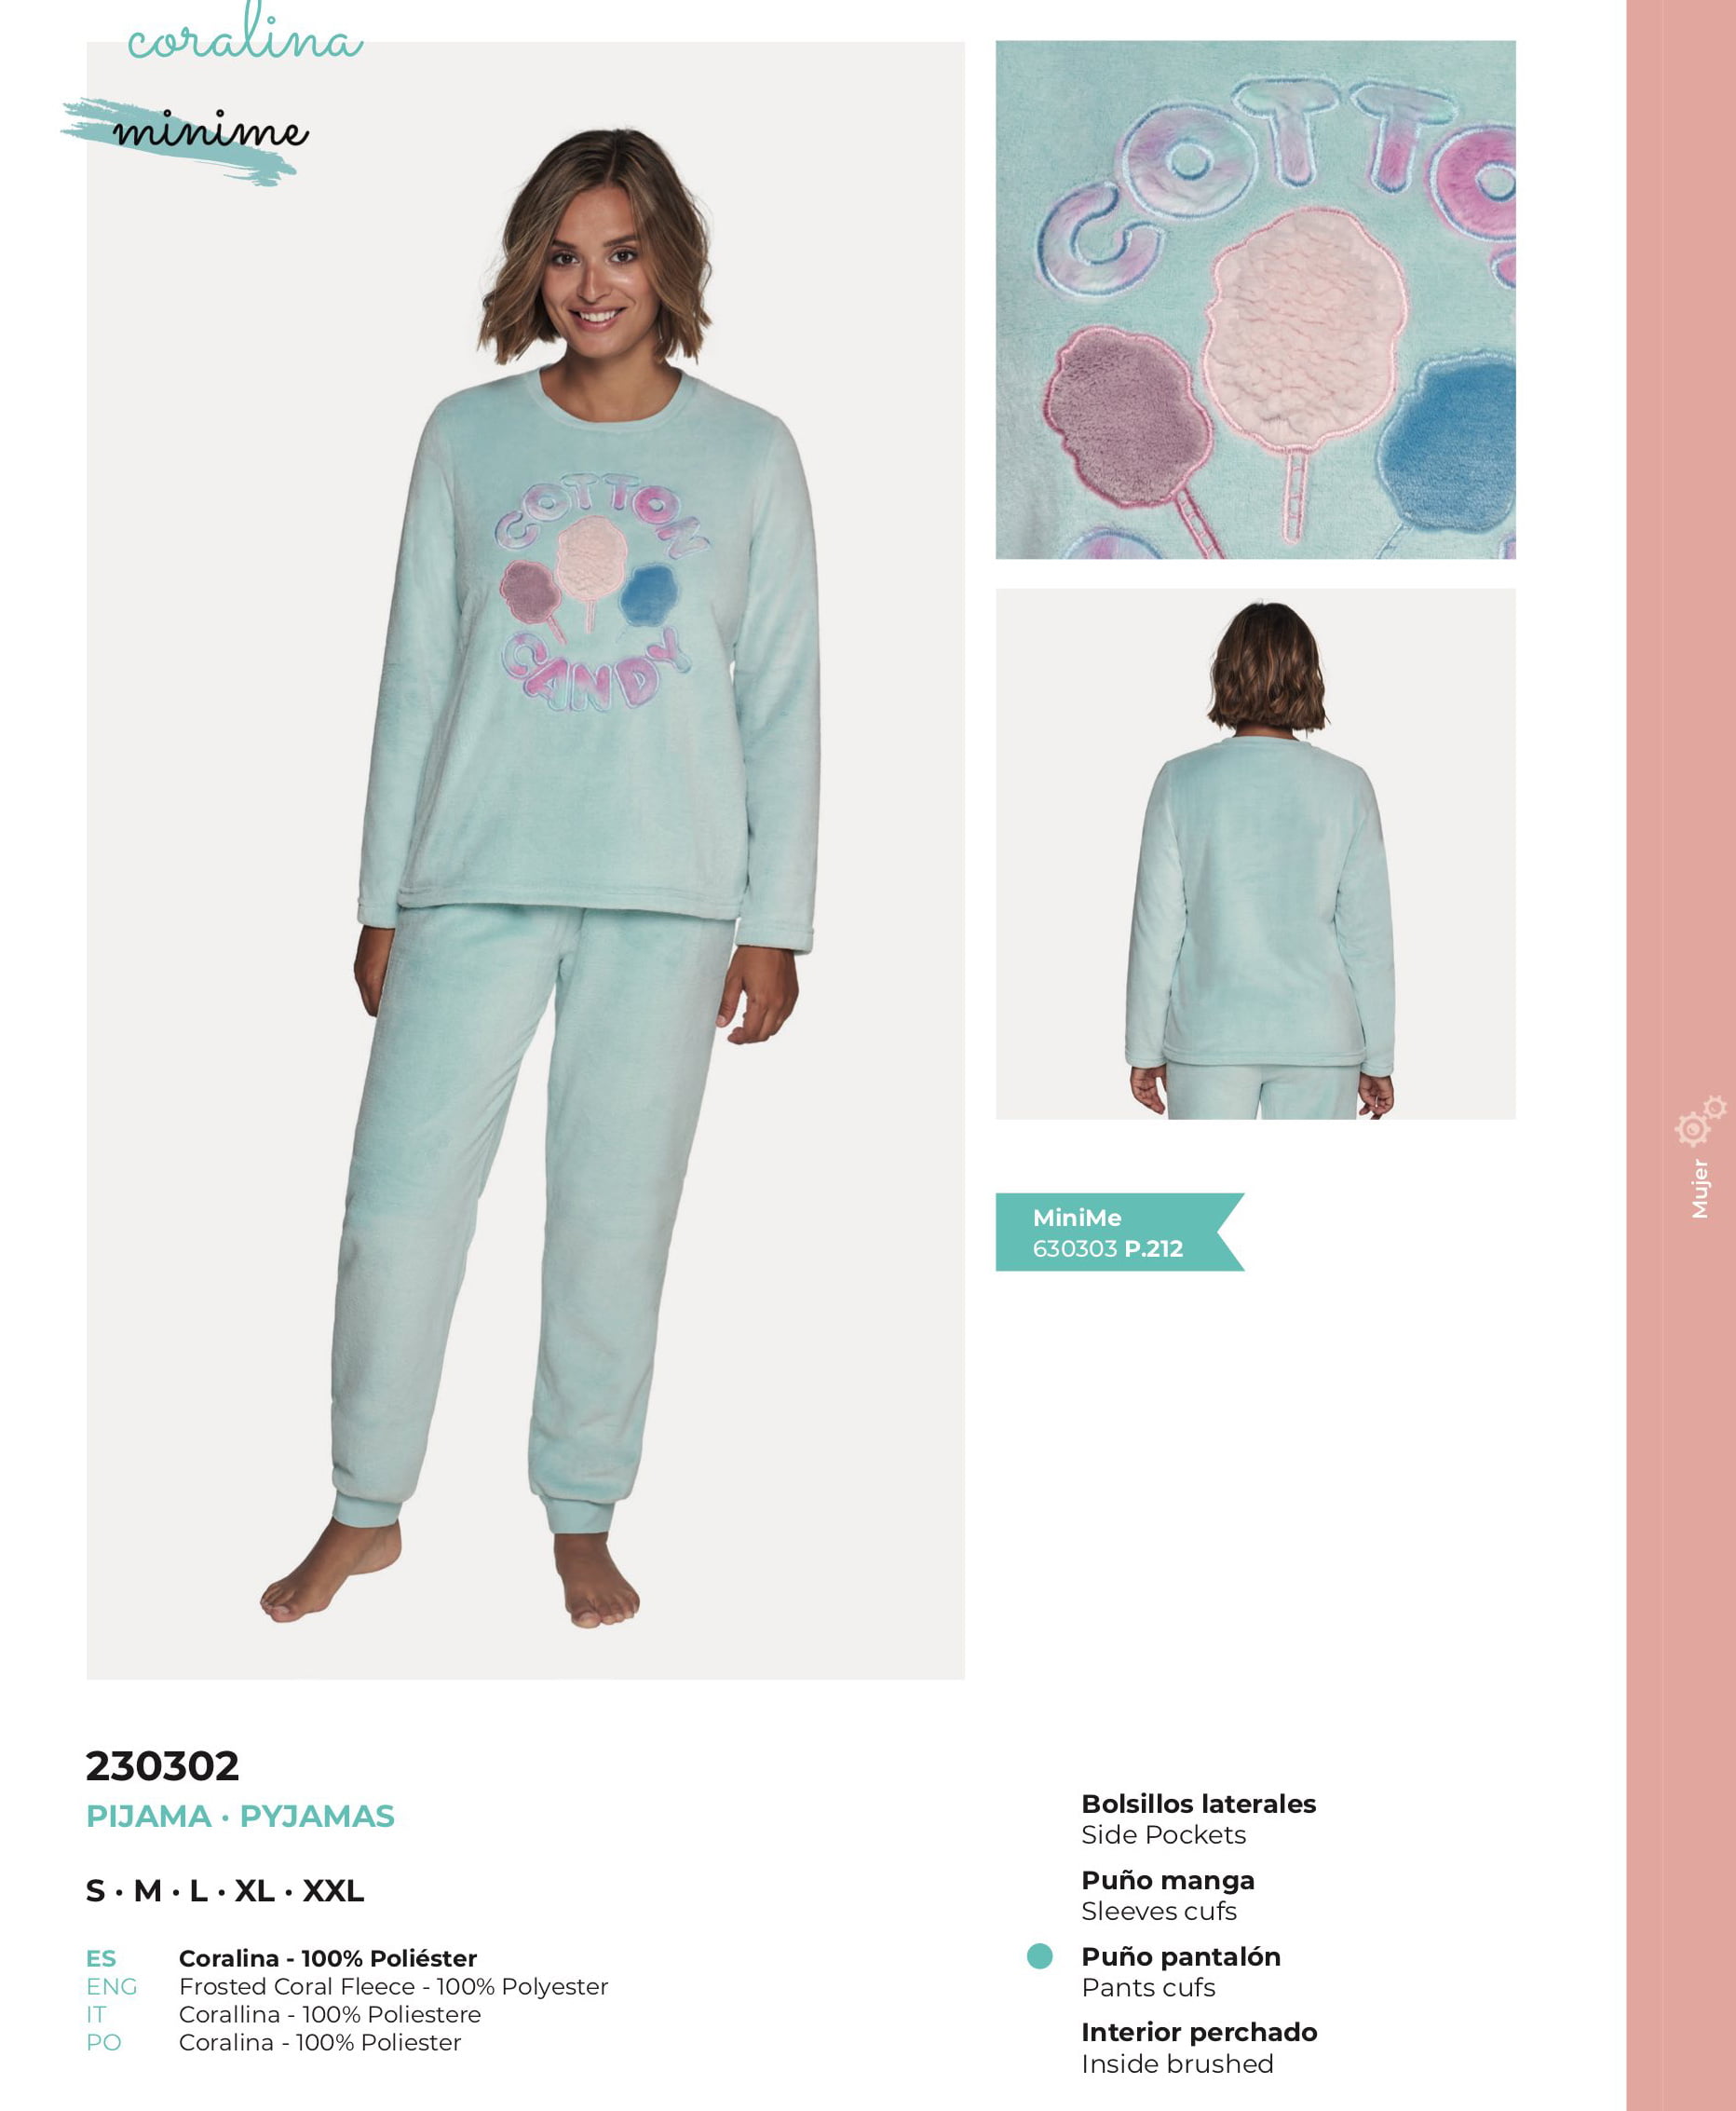 huevo codo Ideal Pijama Coralina 230302 | Pijamas baratos online en EstiloHogar.es